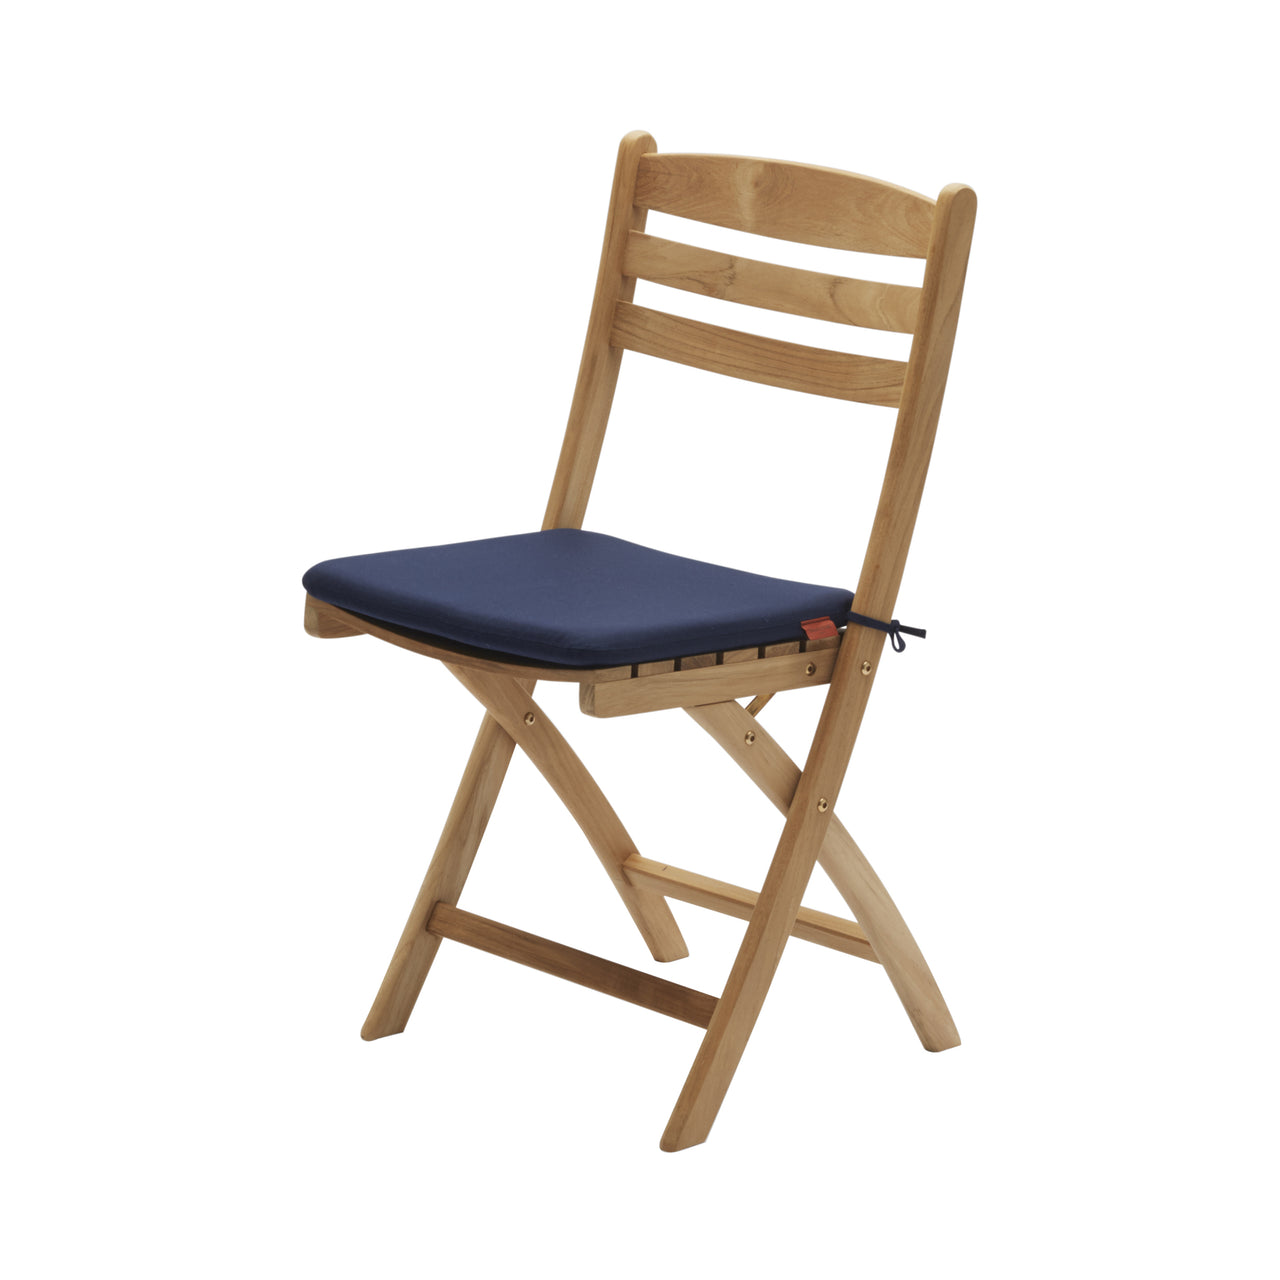 Selandia Chair: With Marine Cushion